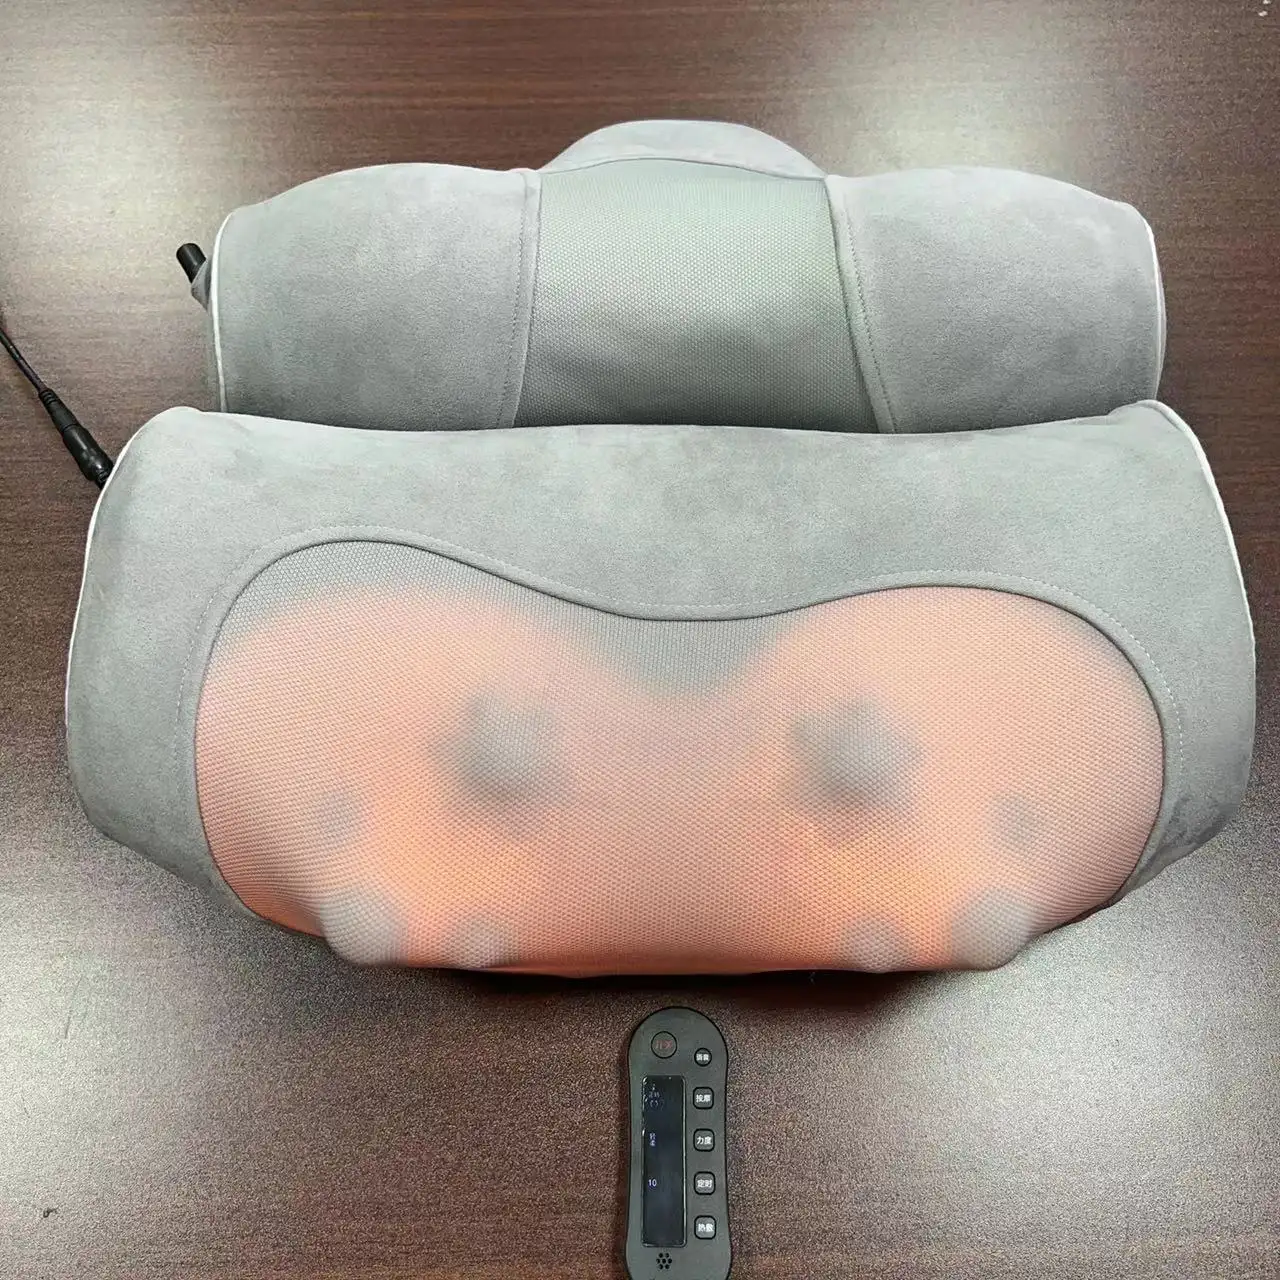 Nuovo cuscino per massaggio morbido 2 in 1 massaggiatori elettrici per collo e collo massaggiatori ricaricabili per collo e schiena per alleviare il dolore vibrazioni e calore